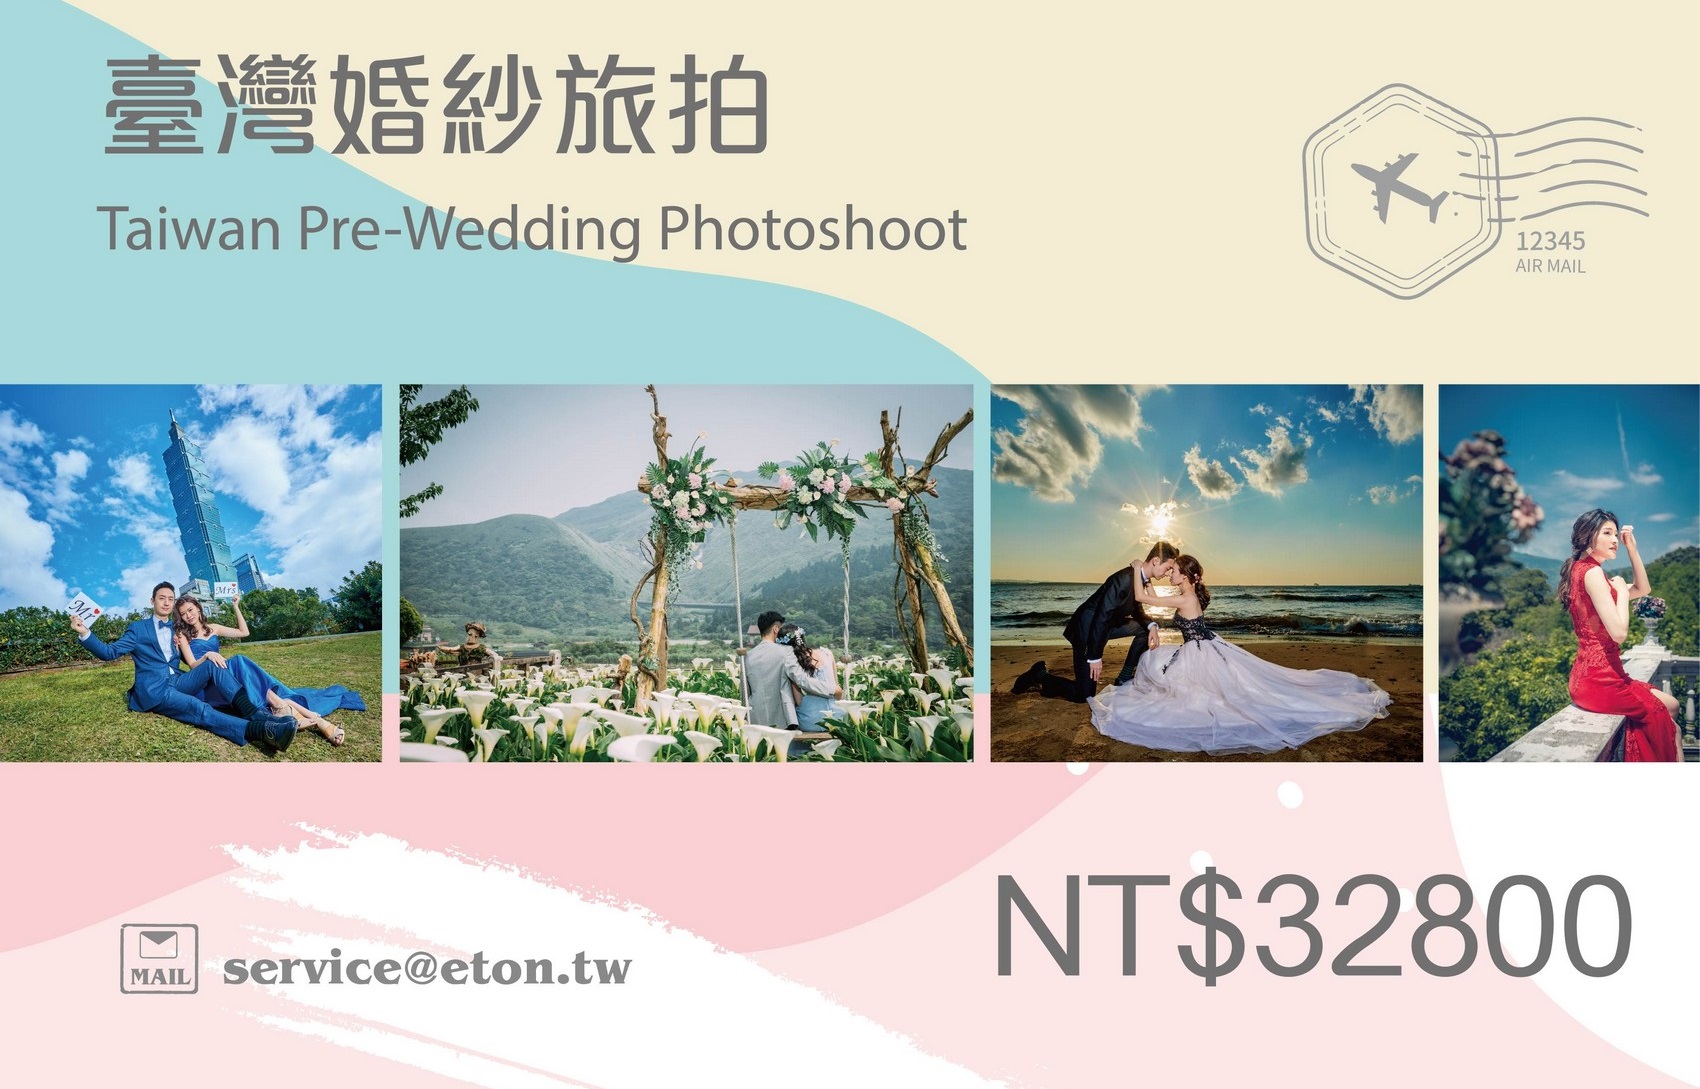 台灣 婚紗工作室,台灣 婚紗攝影價格,屏東拍婚紗,屏東 婚紗攝影,屏東 婚紗工作室